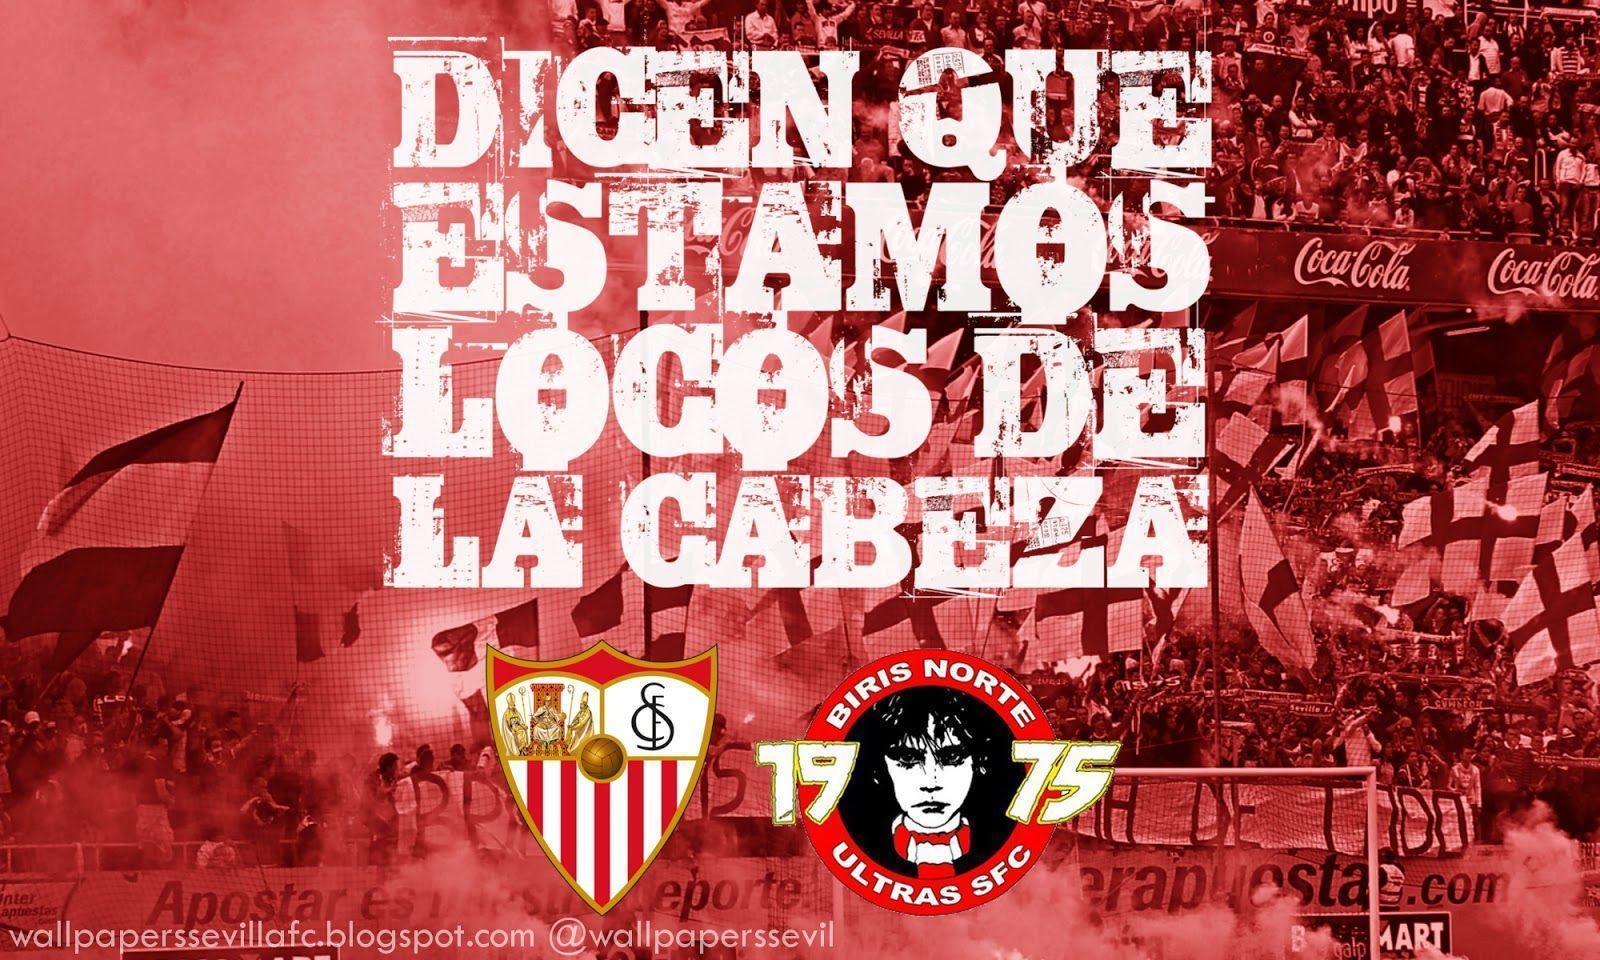 Dicen que estamos locos de la cabeza. Wallpaper Sevilla FC